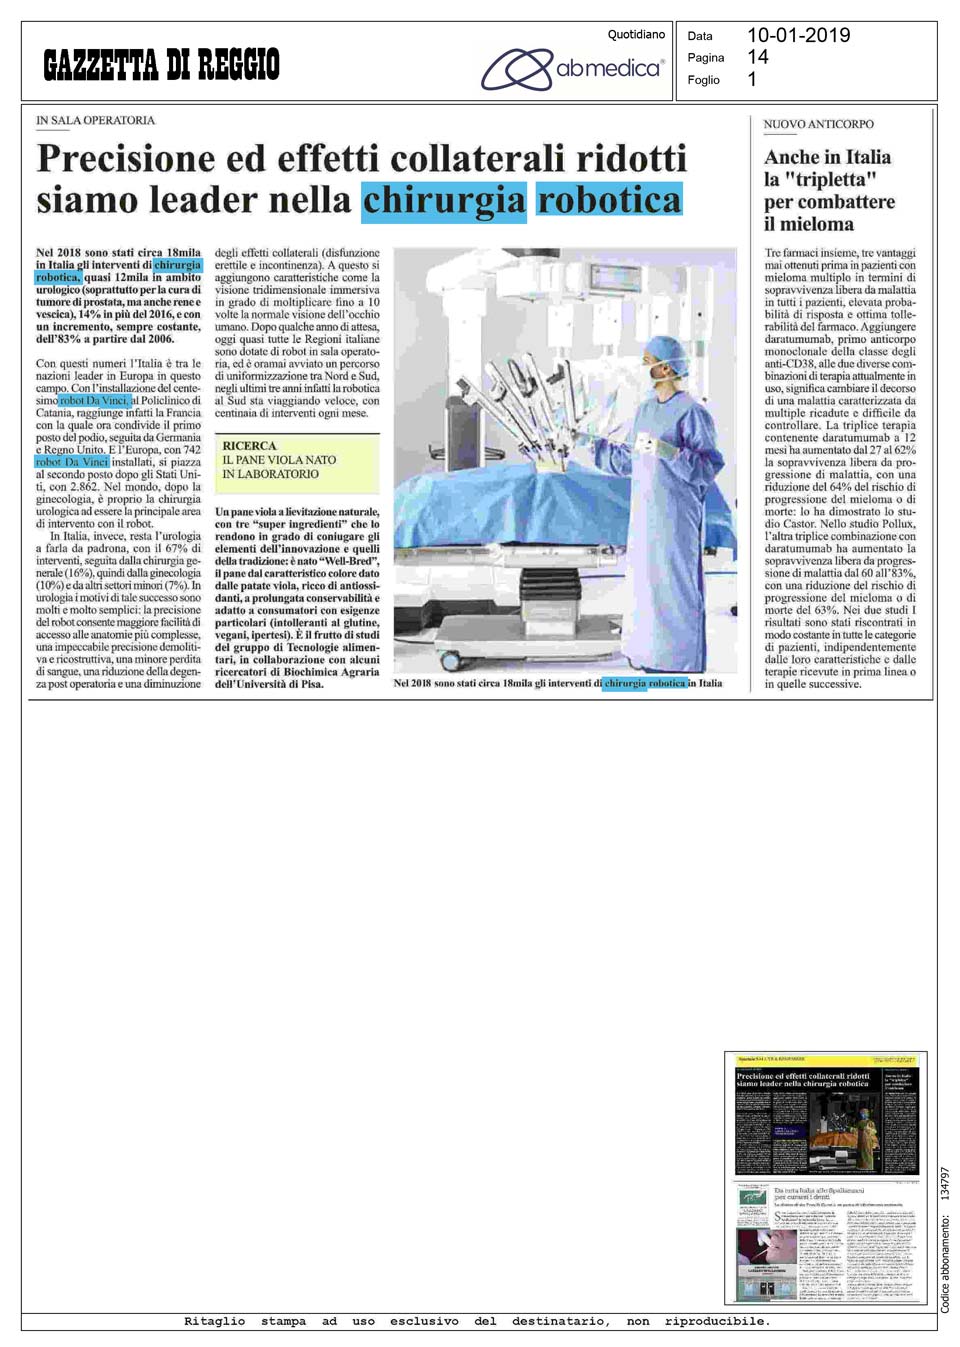 Gazzetta di Reggio - Precisione ed effetti collaterali ridotti: siamo leader nella chirurgia robotica